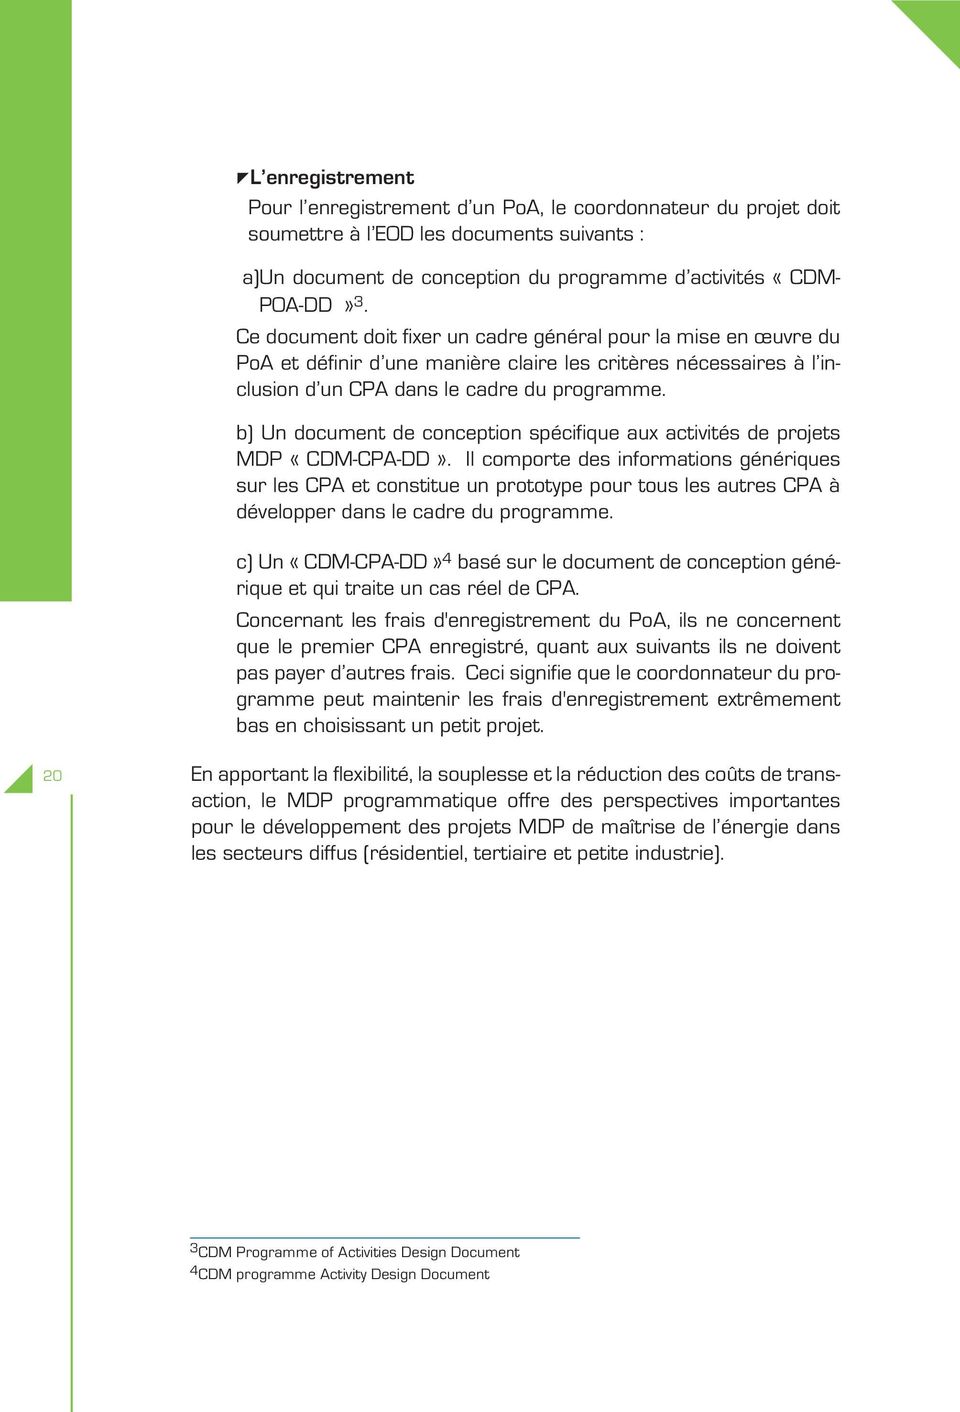 b) Un document de conception spécifique aux activités de projets MDP «CDM-CPA-DD».